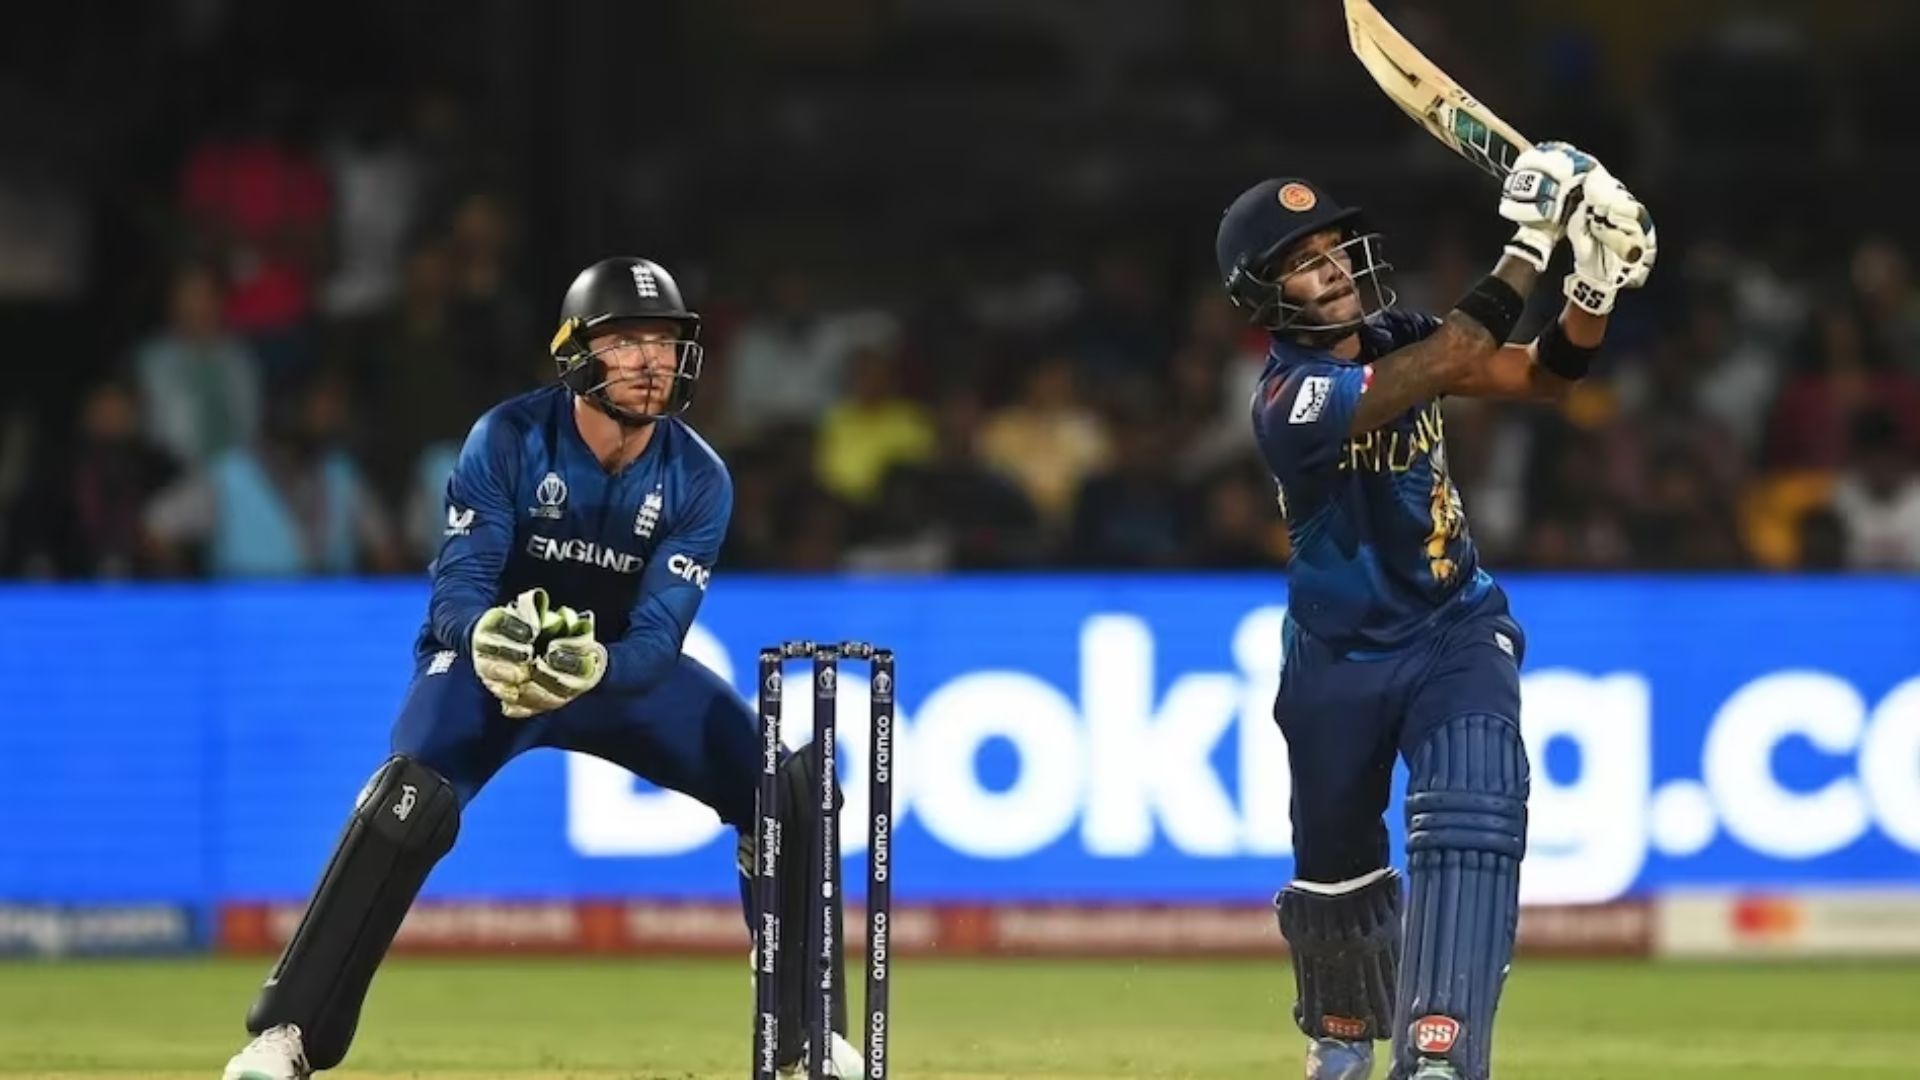 ENG vs SL: इंग्लैंड का निराशाजनक प्रदर्शन जारी, श्रीलंका ने 8 विकेट से धोया